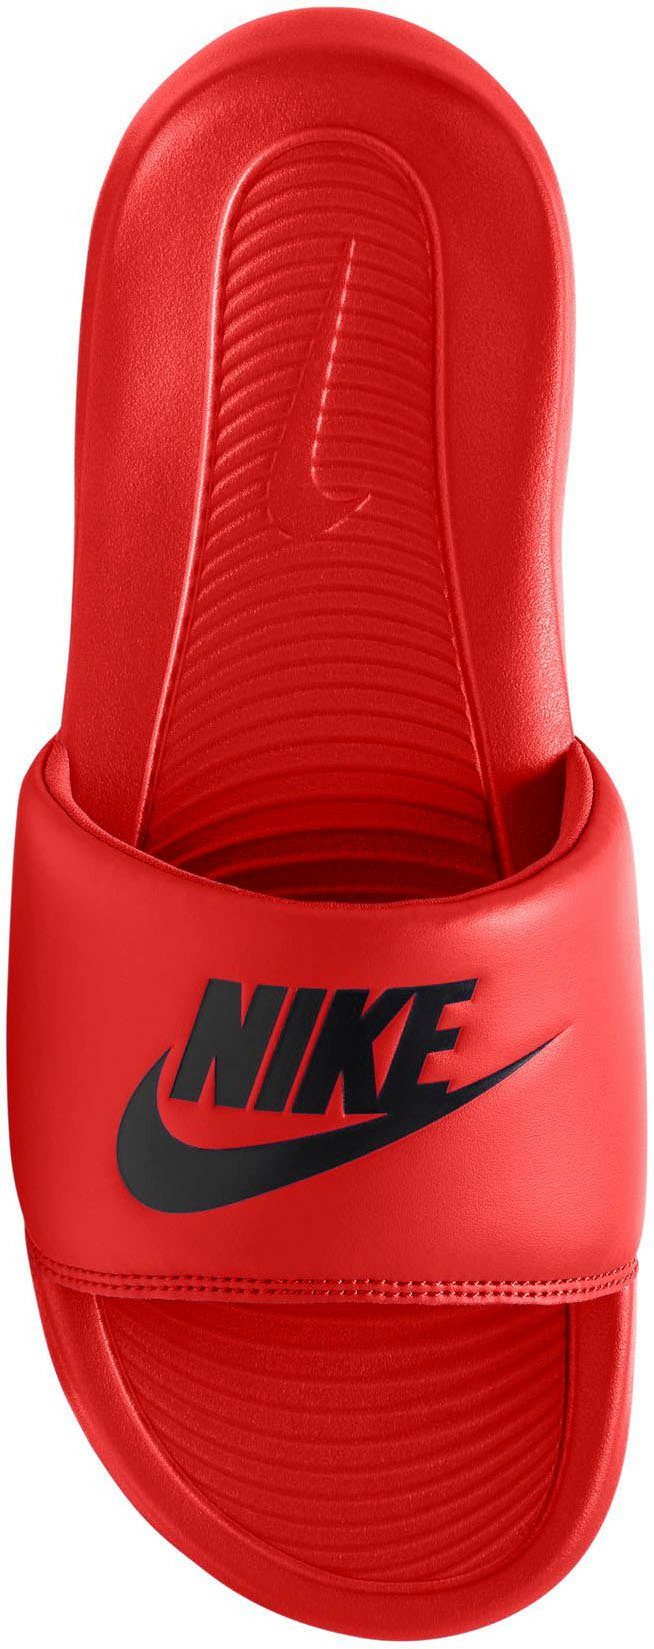 Nike Sportswear VICTORI ONE rot Badesandale